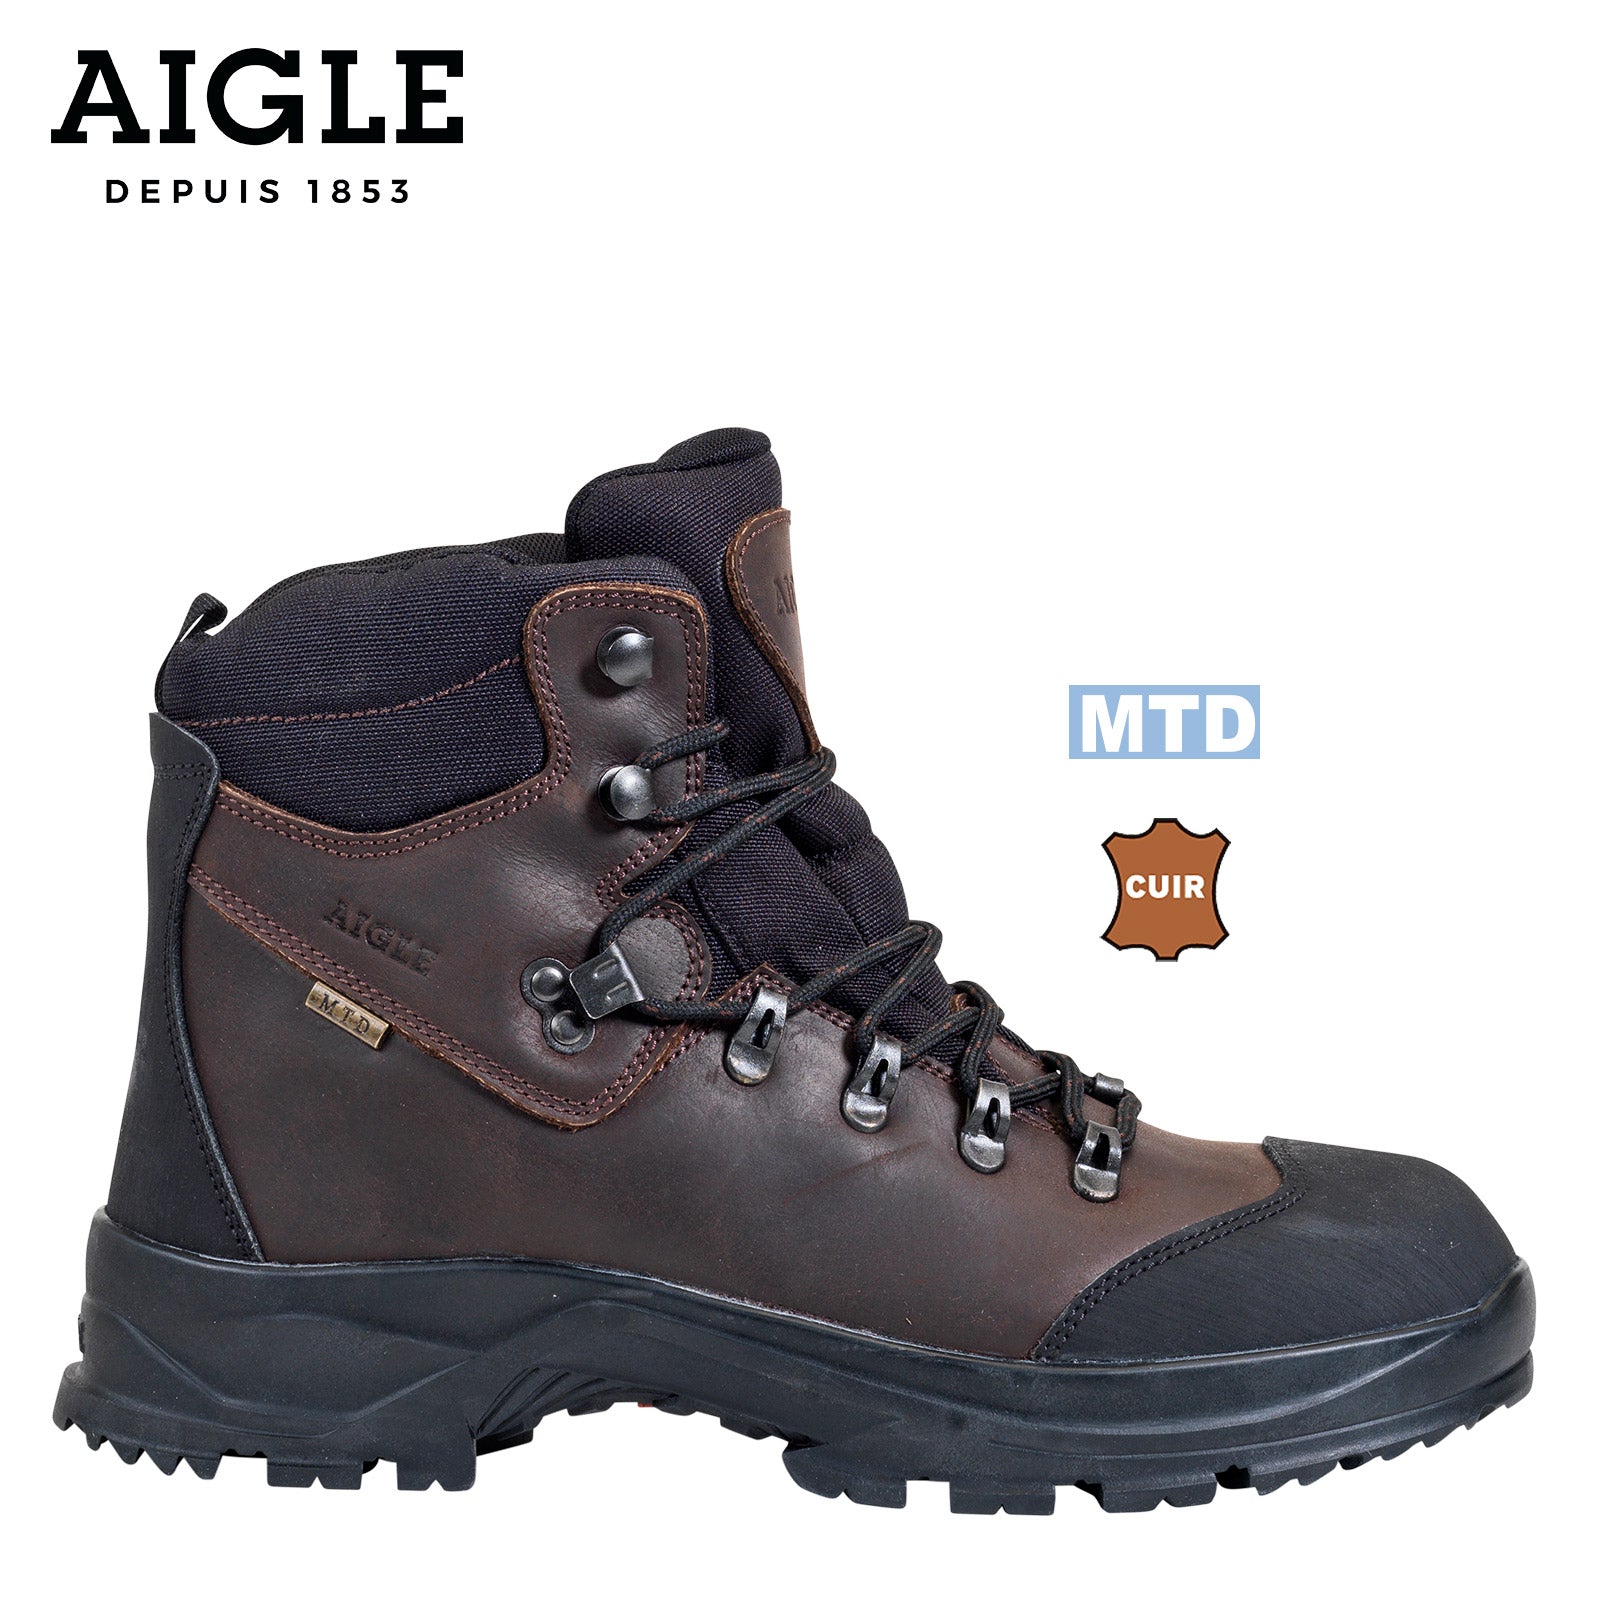 Es handelt sich hier um AIGLE Laforse MTD® - Outdoor Stiefel für die Jagd.